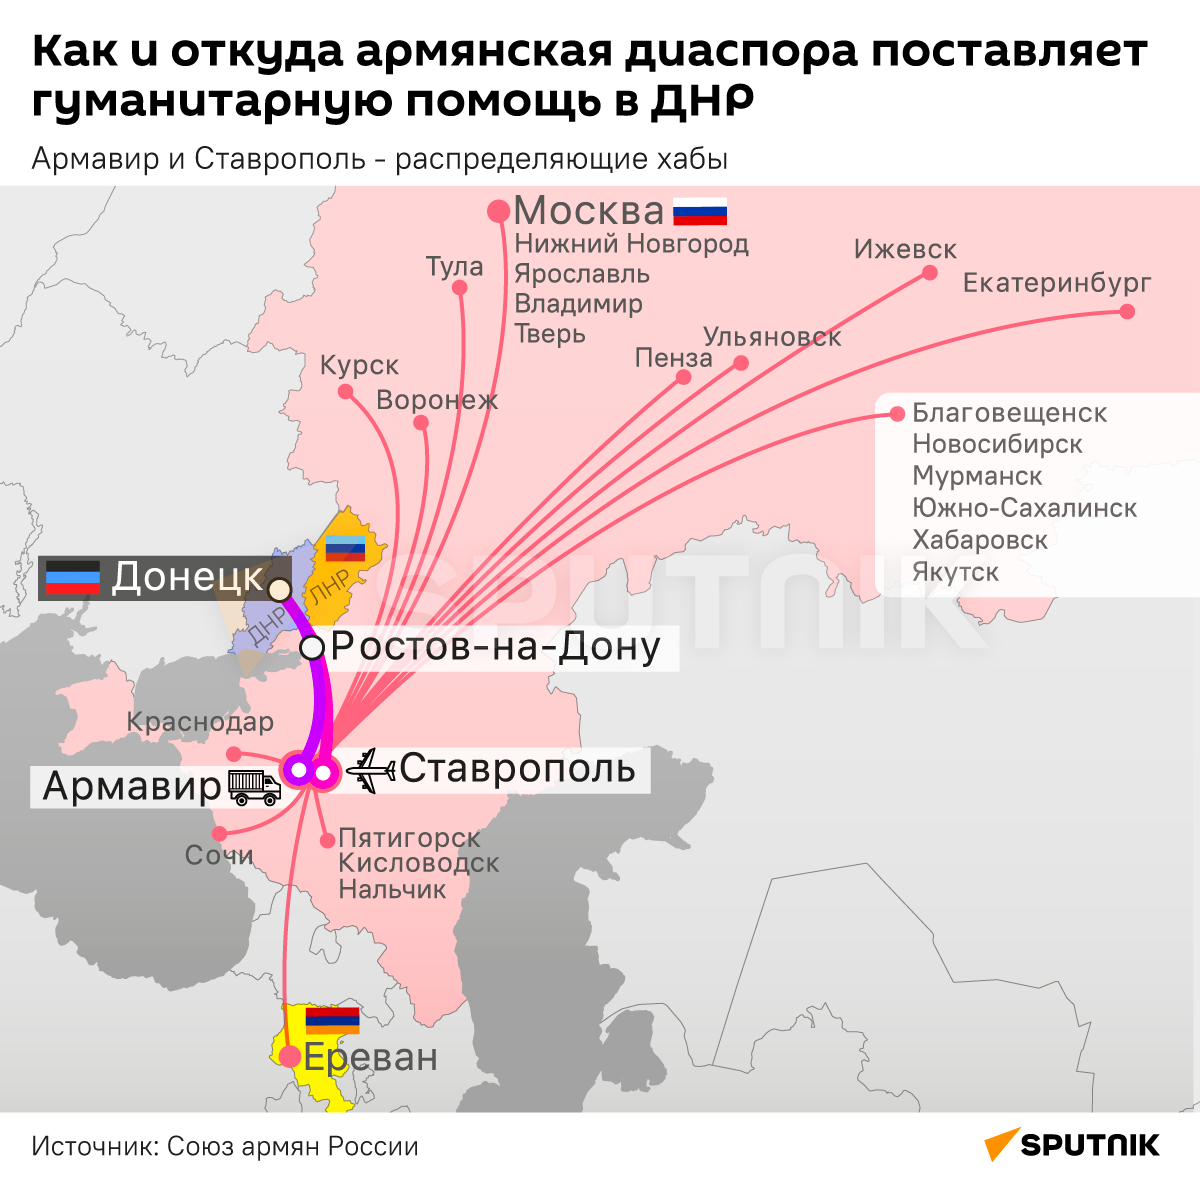 Карта отправки гуманитарной помощи армянской диаспоры в ДНР - Sputnik Армения